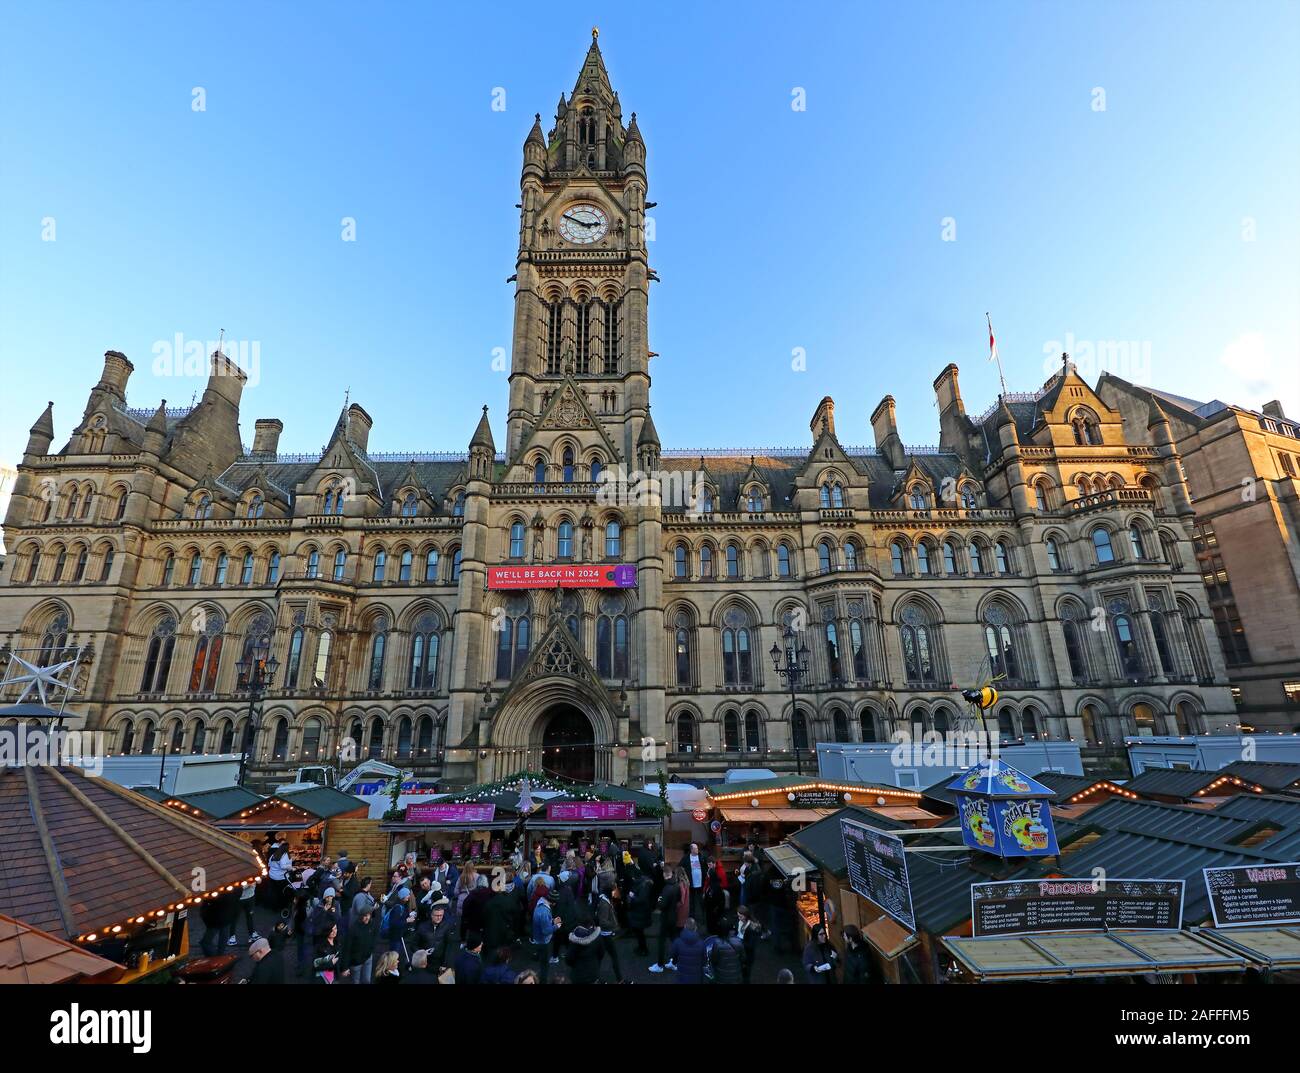 Mercatini di Natale, Municipio di Manchester, Albert Square, Manchester, Inghilterra, Regno Unito, M2 5DB Foto Stock